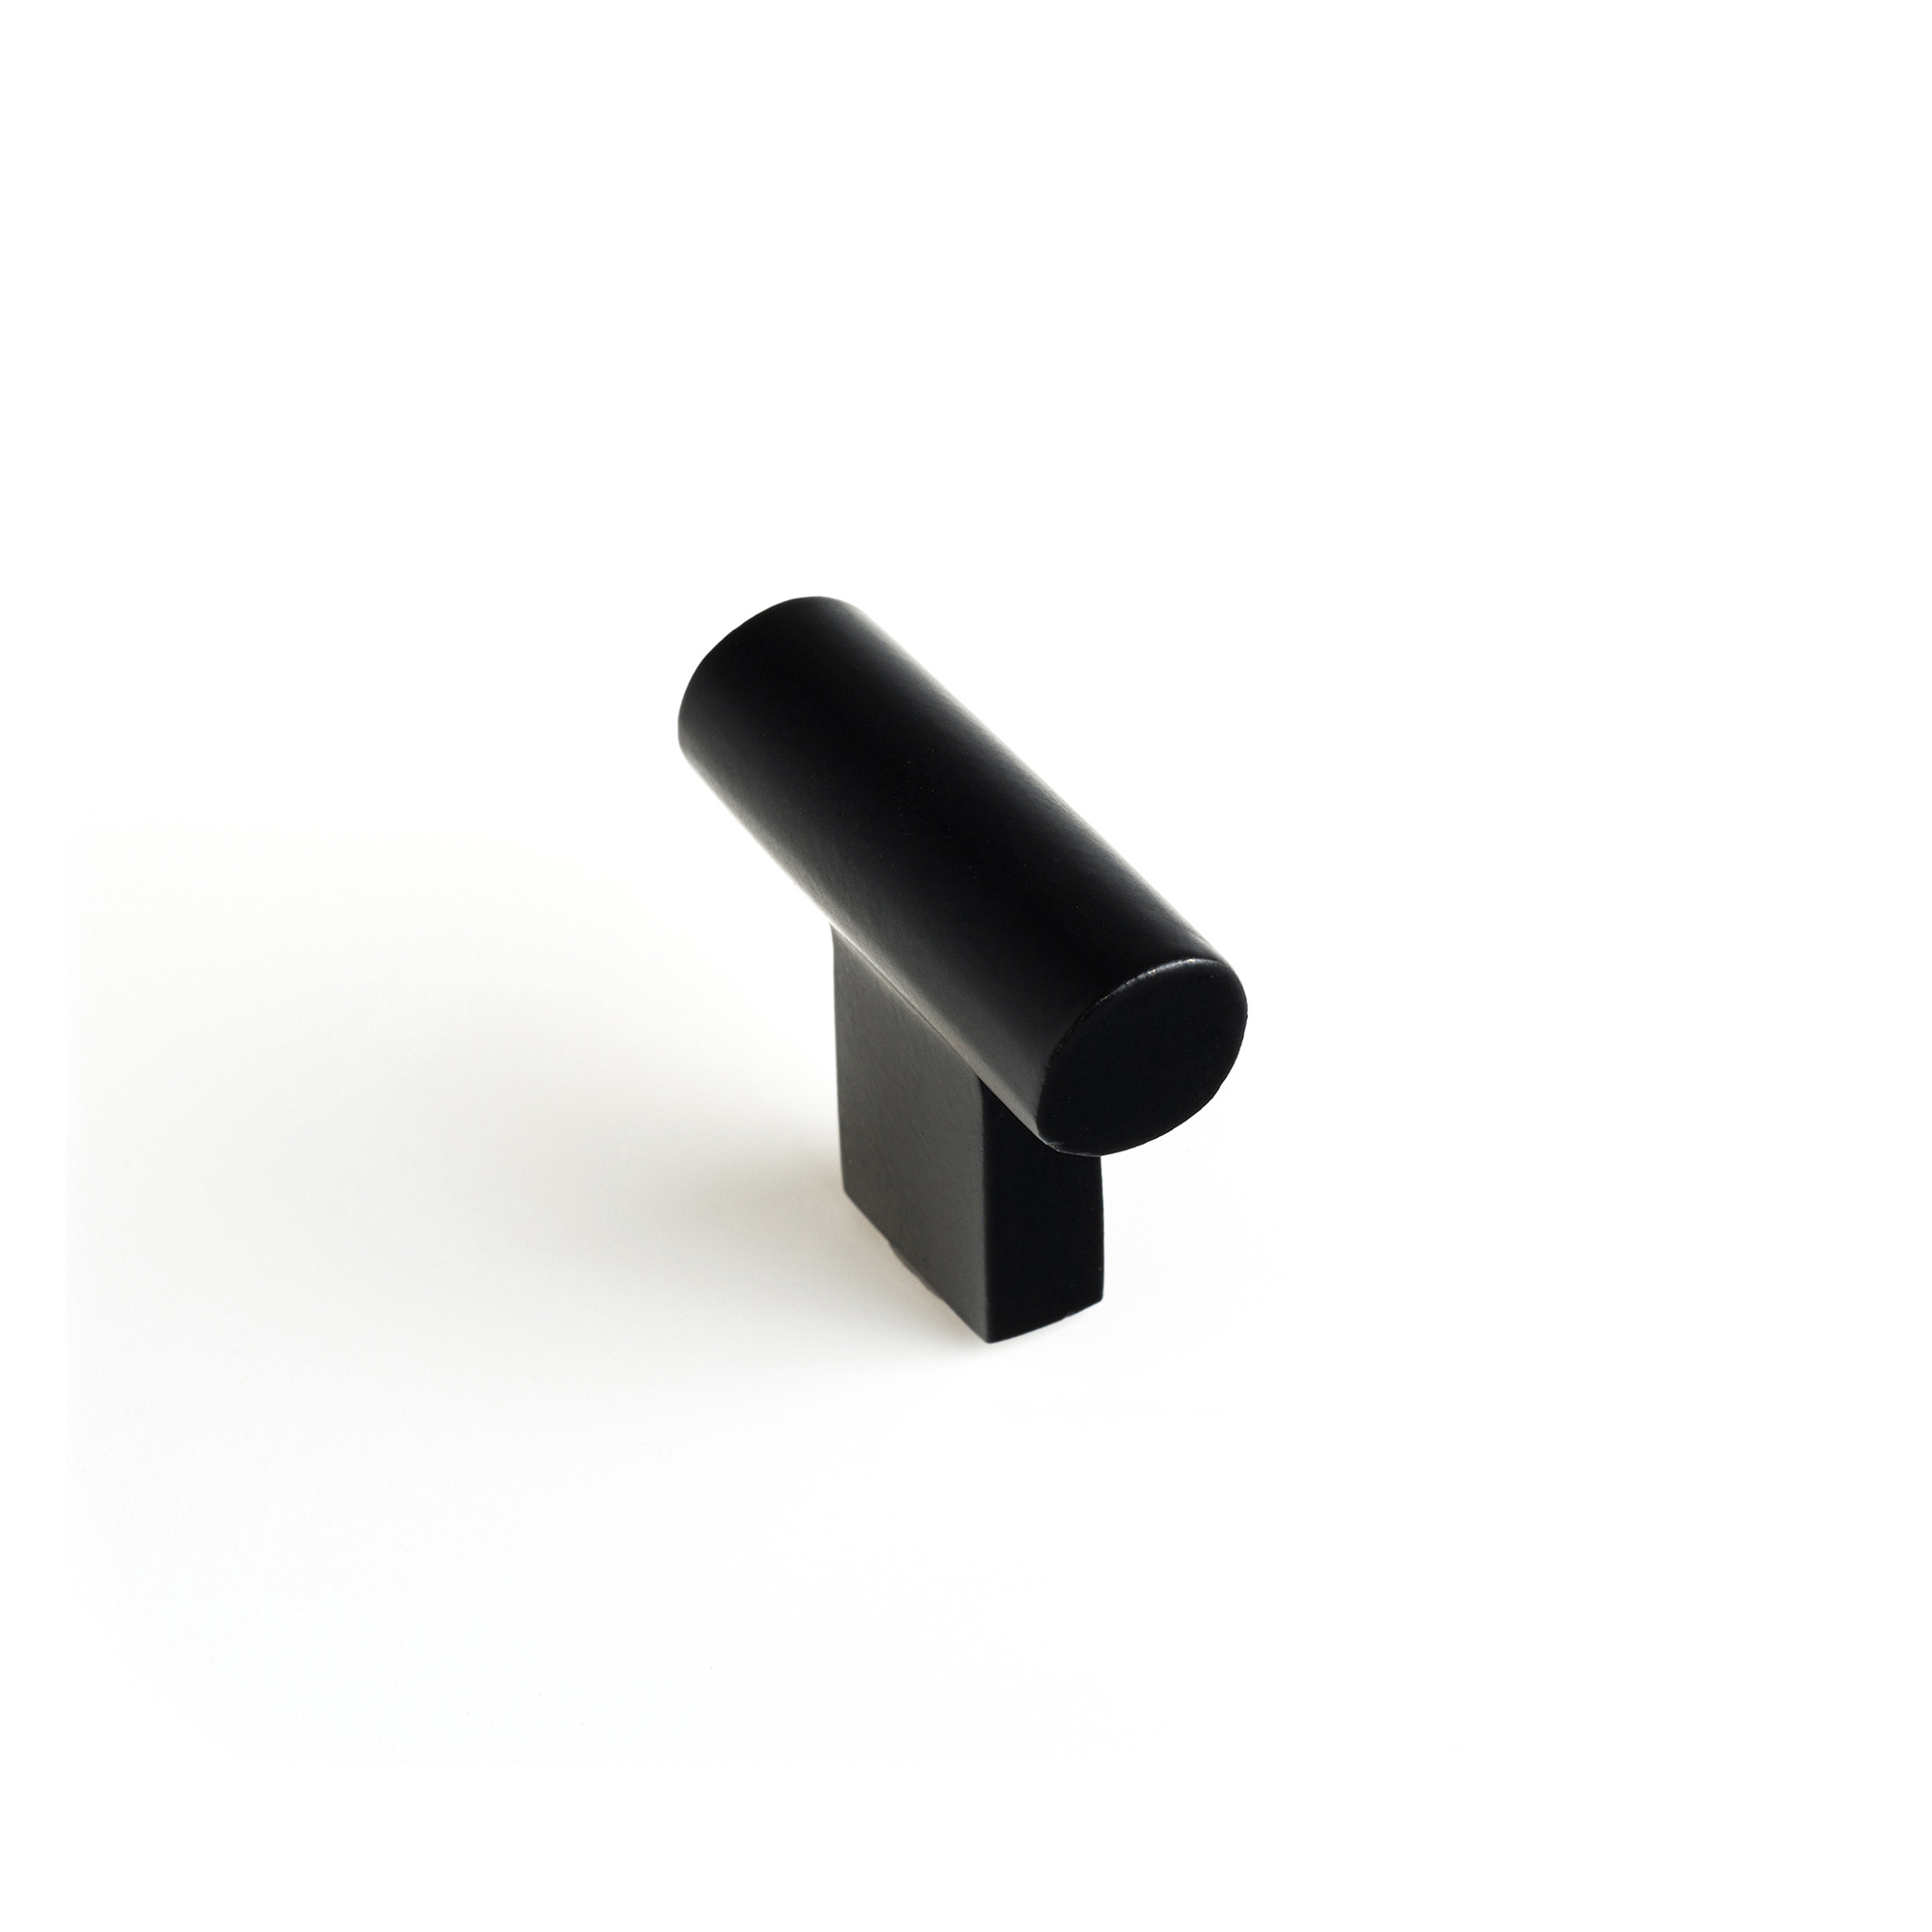 Pomo para Mueble Fabricado en Latón Negro mate | Medidas 33*12*31 mm | Sistema de Fijación Atornillado | Incluye Tornillos M4 | 4 Unidades